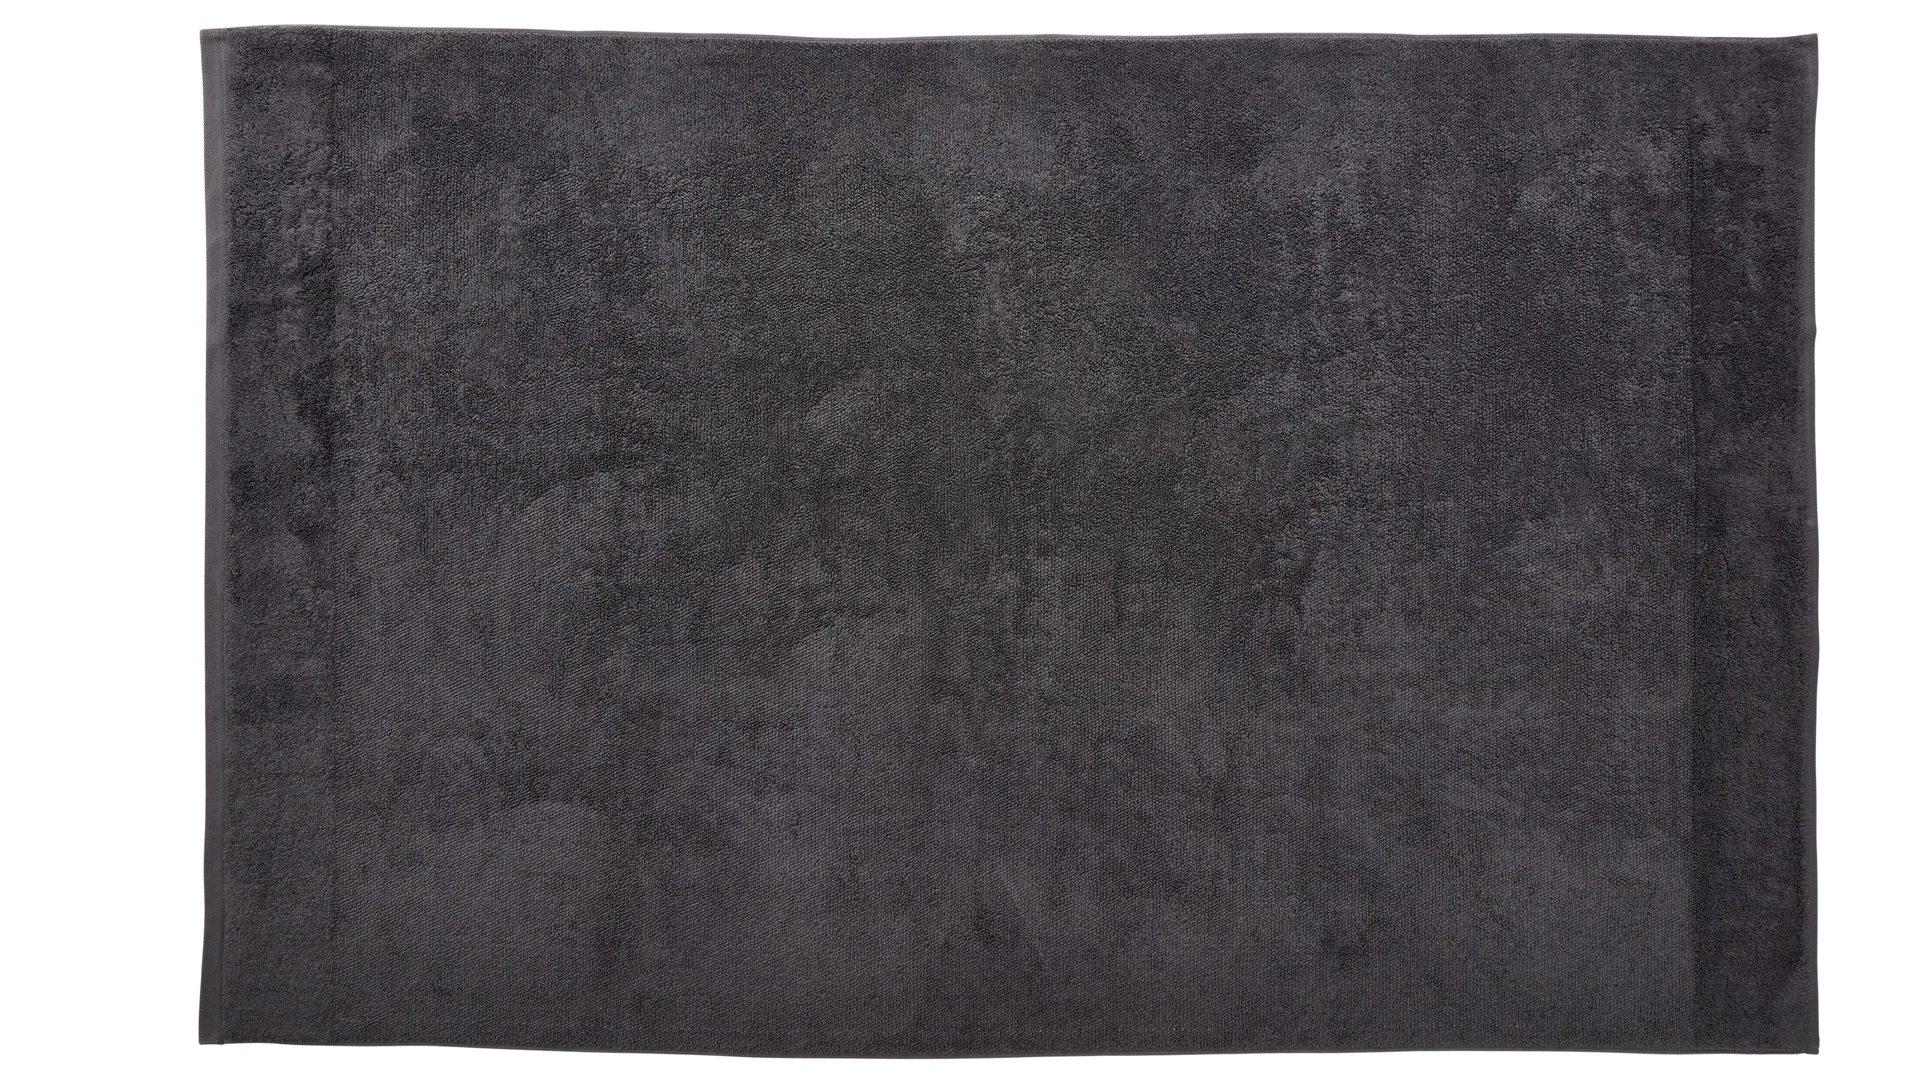 Duschhandtuch Interliving aus Naturfaser in Schwarz Interliving Handtuch Serie 9108 - Duschtuch Anthrazit – ca. 100 x 150 cm